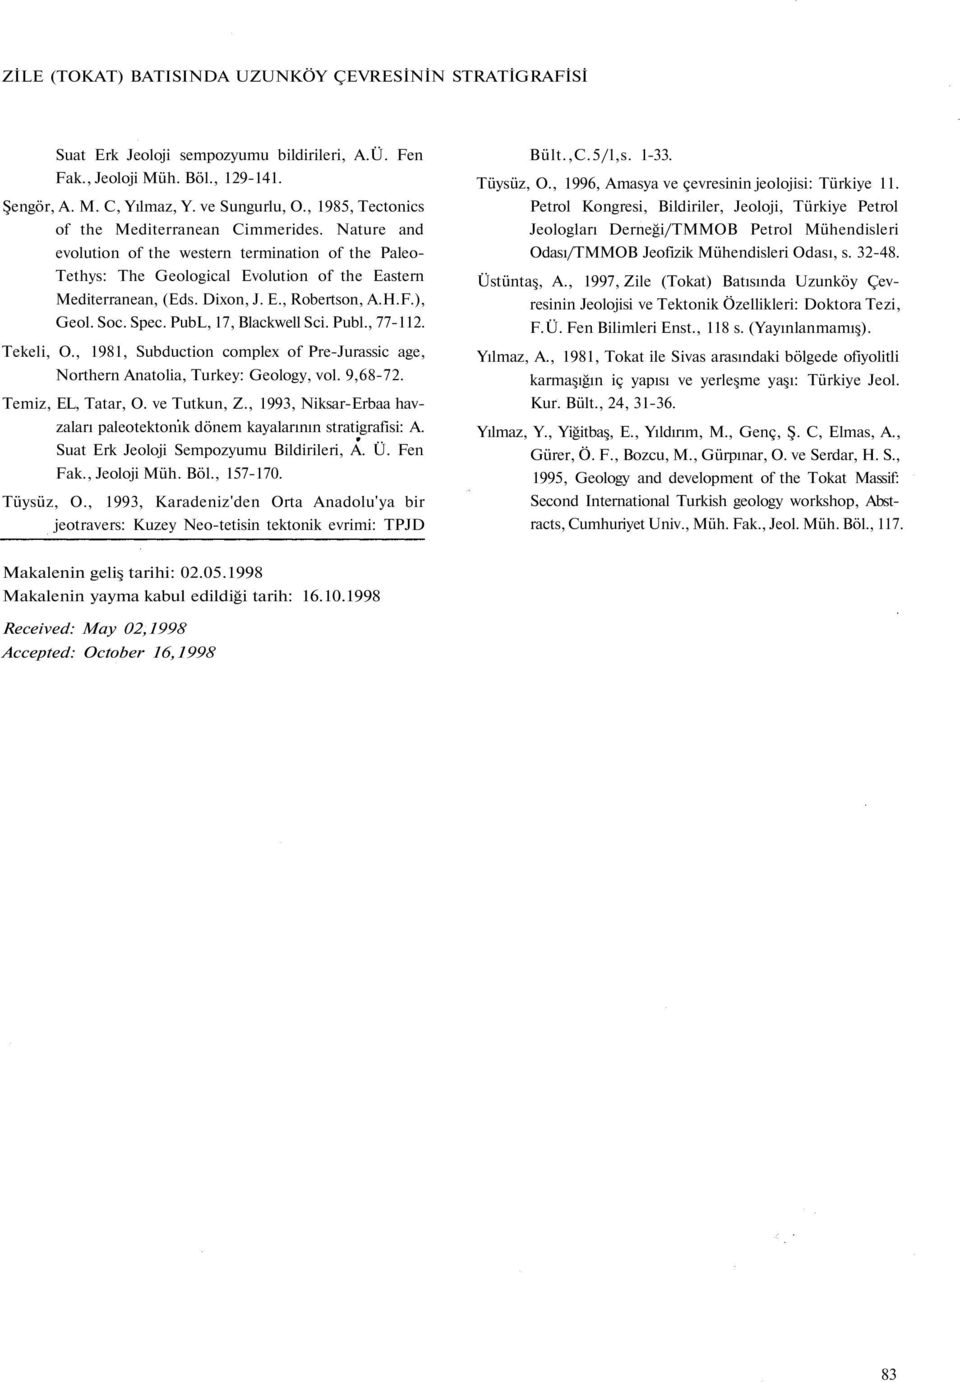 H.F.), Geol. Soc. Spec. PubL, 17, Blackwell Sci. Publ., 77-112. Tekeli, O., 1981, Subduction complex of Pre-Jurassic age, Northern Anatolia, Turkey: Geology, vol. 9,68-72. Temiz, EL, Tatar, O.